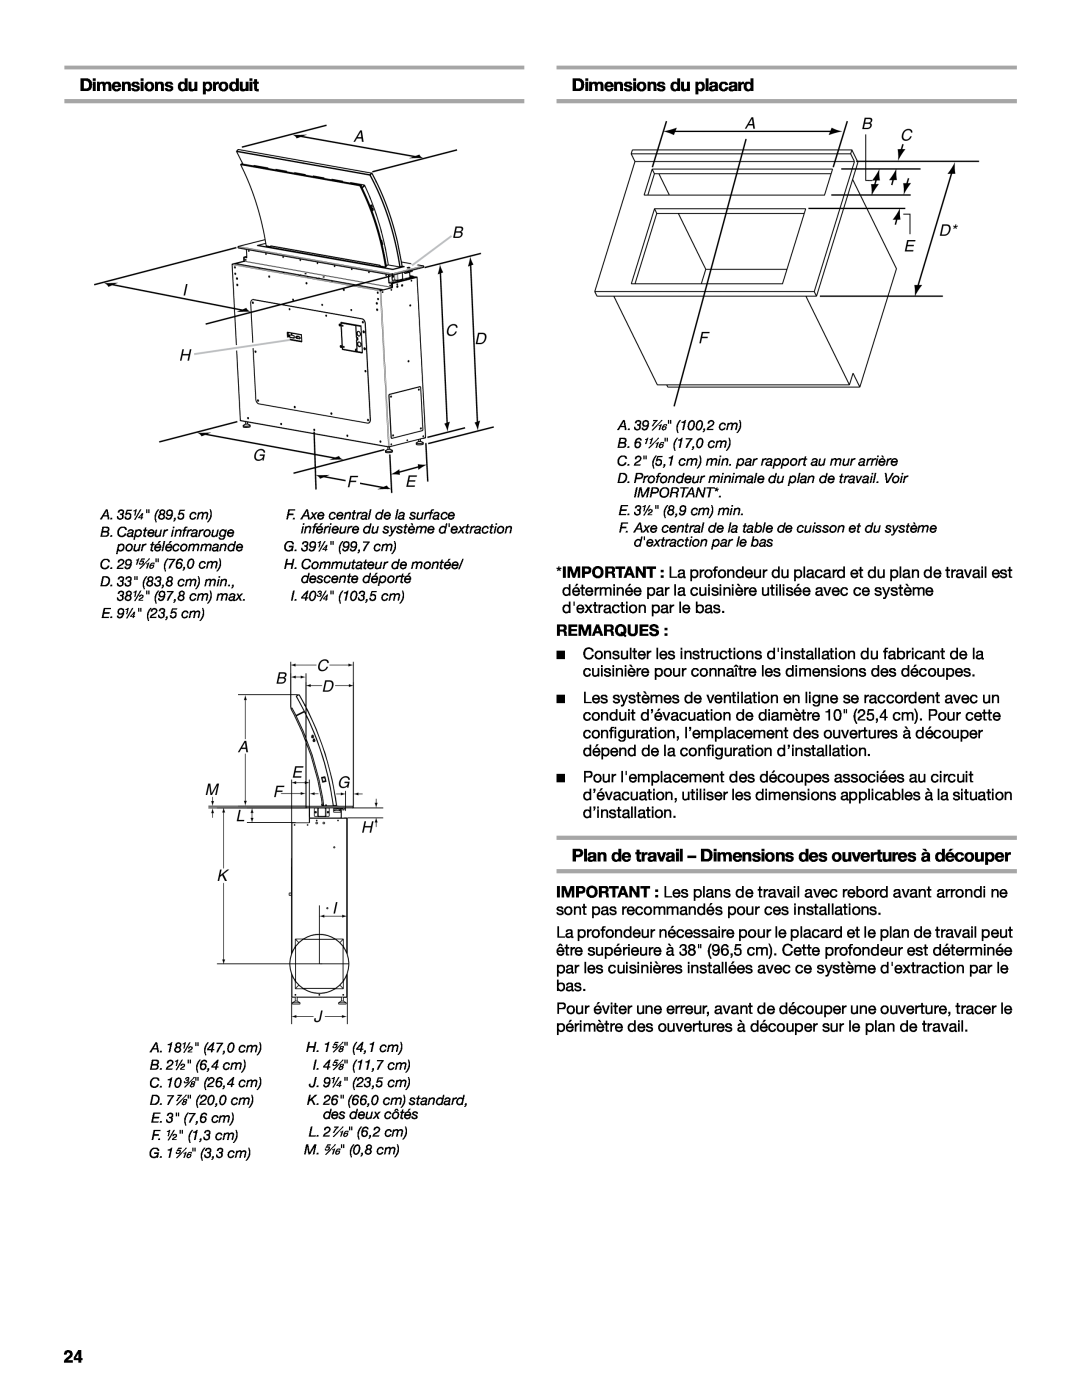 Jenn-Air W10526413C Dimensions du produit, Dimensions du placard, Plan de travail - Dimensions des ouvertures à découper 